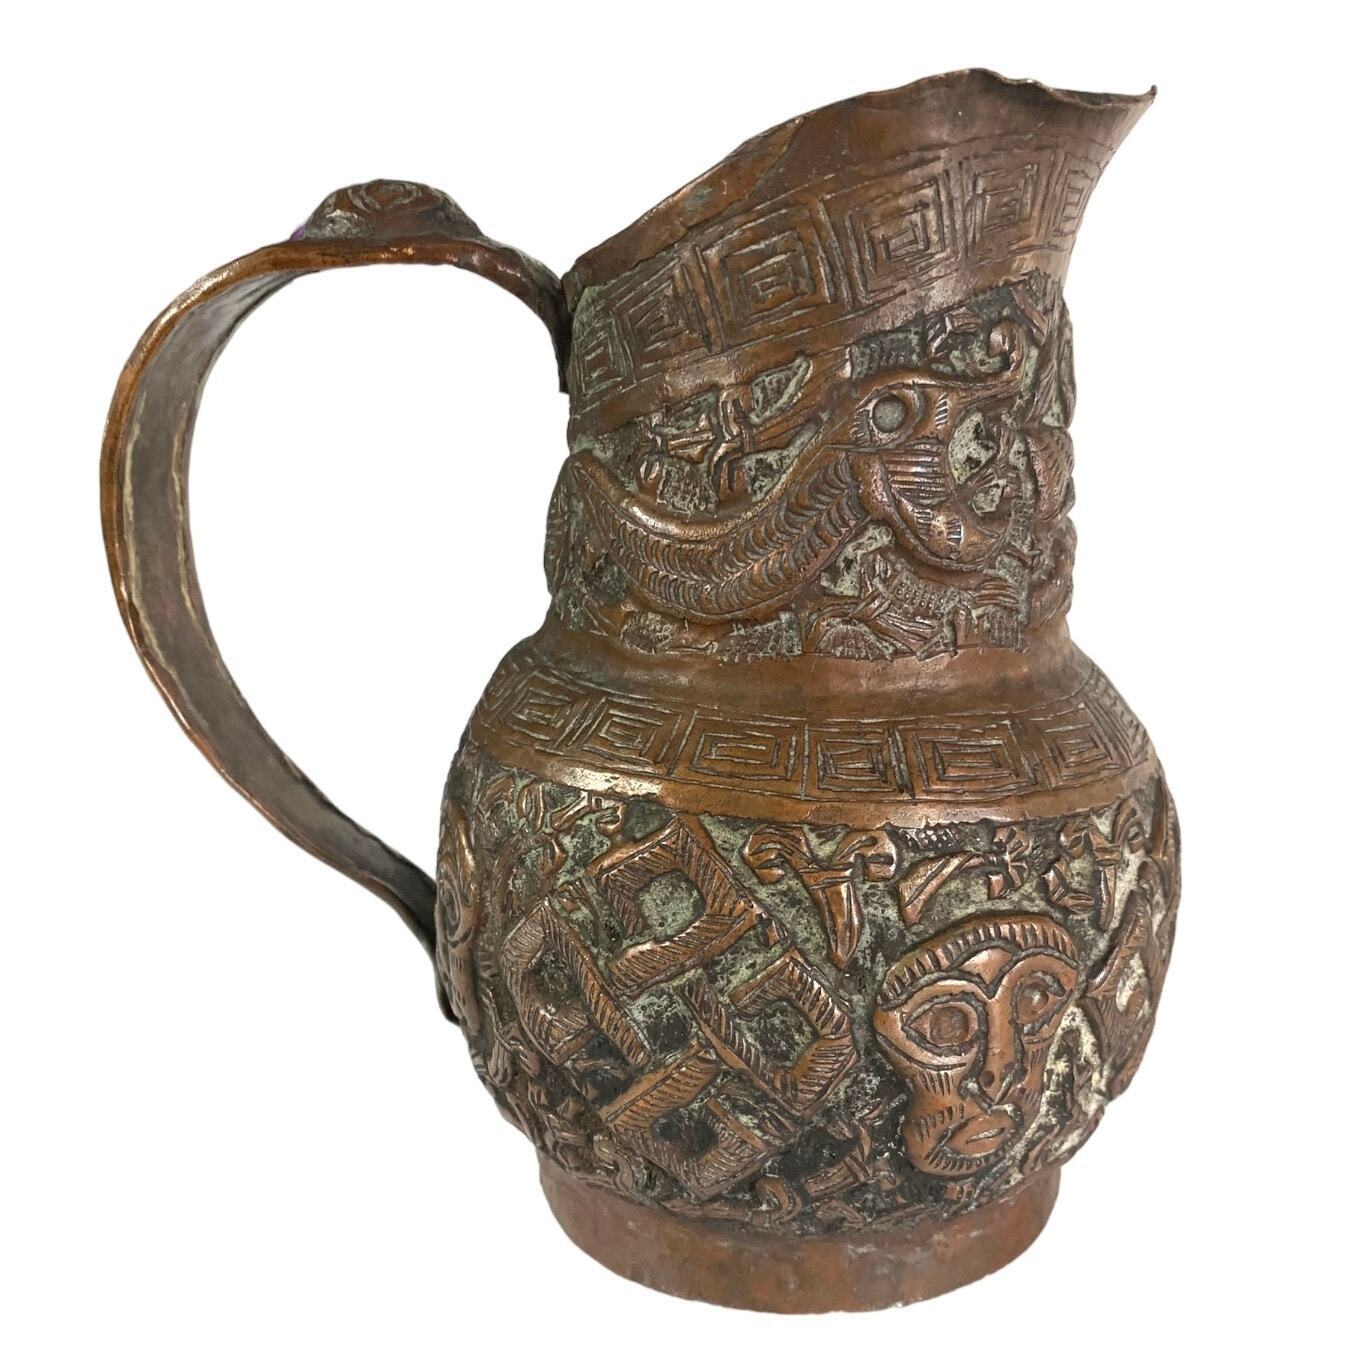 Copper Jug Vintage Antique Mayan? Repoussé Pitcher Hand Wrought Snake God Faces